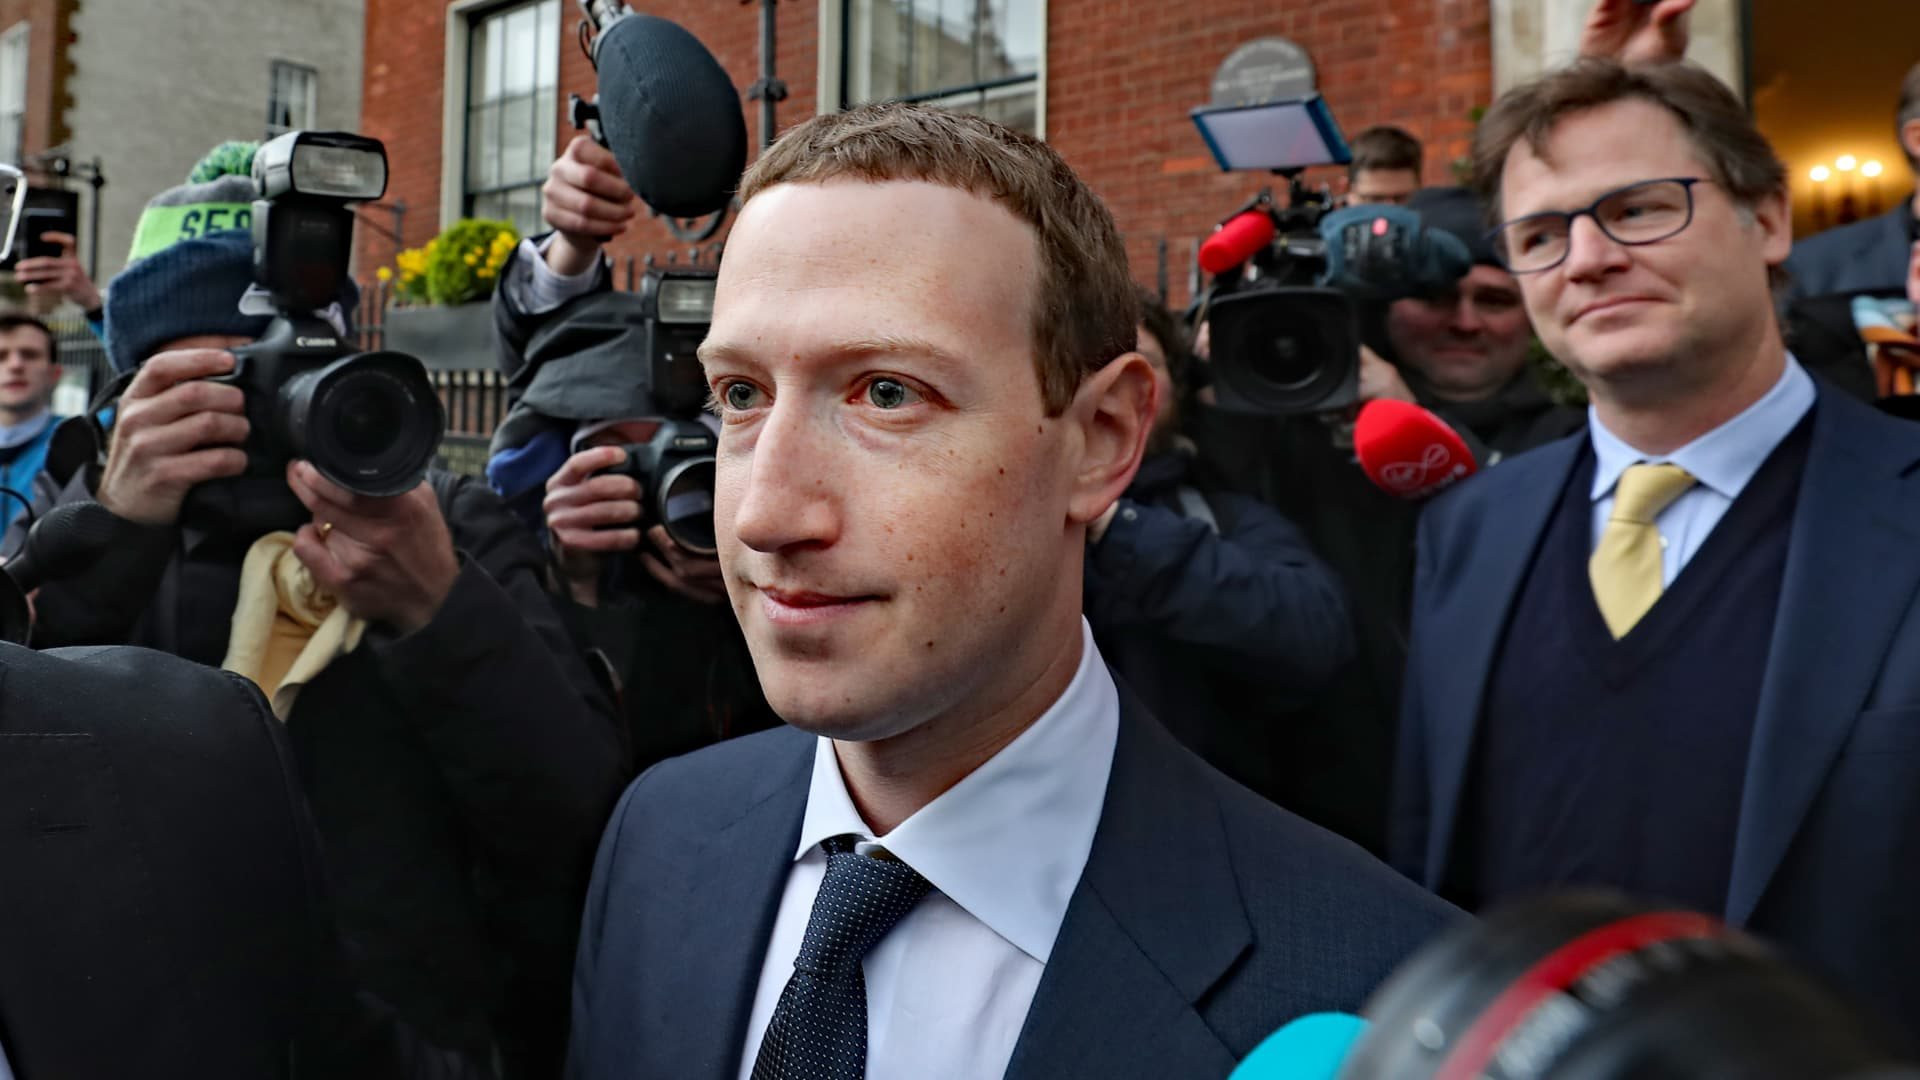 Choáng với chi phí đảm bảo an ninh cho Mark Zuckerberg chẳng kém nguyên thủ quốc gia - tiêu tốn 1,9 tỷ đồng/ngày - Ảnh 1.